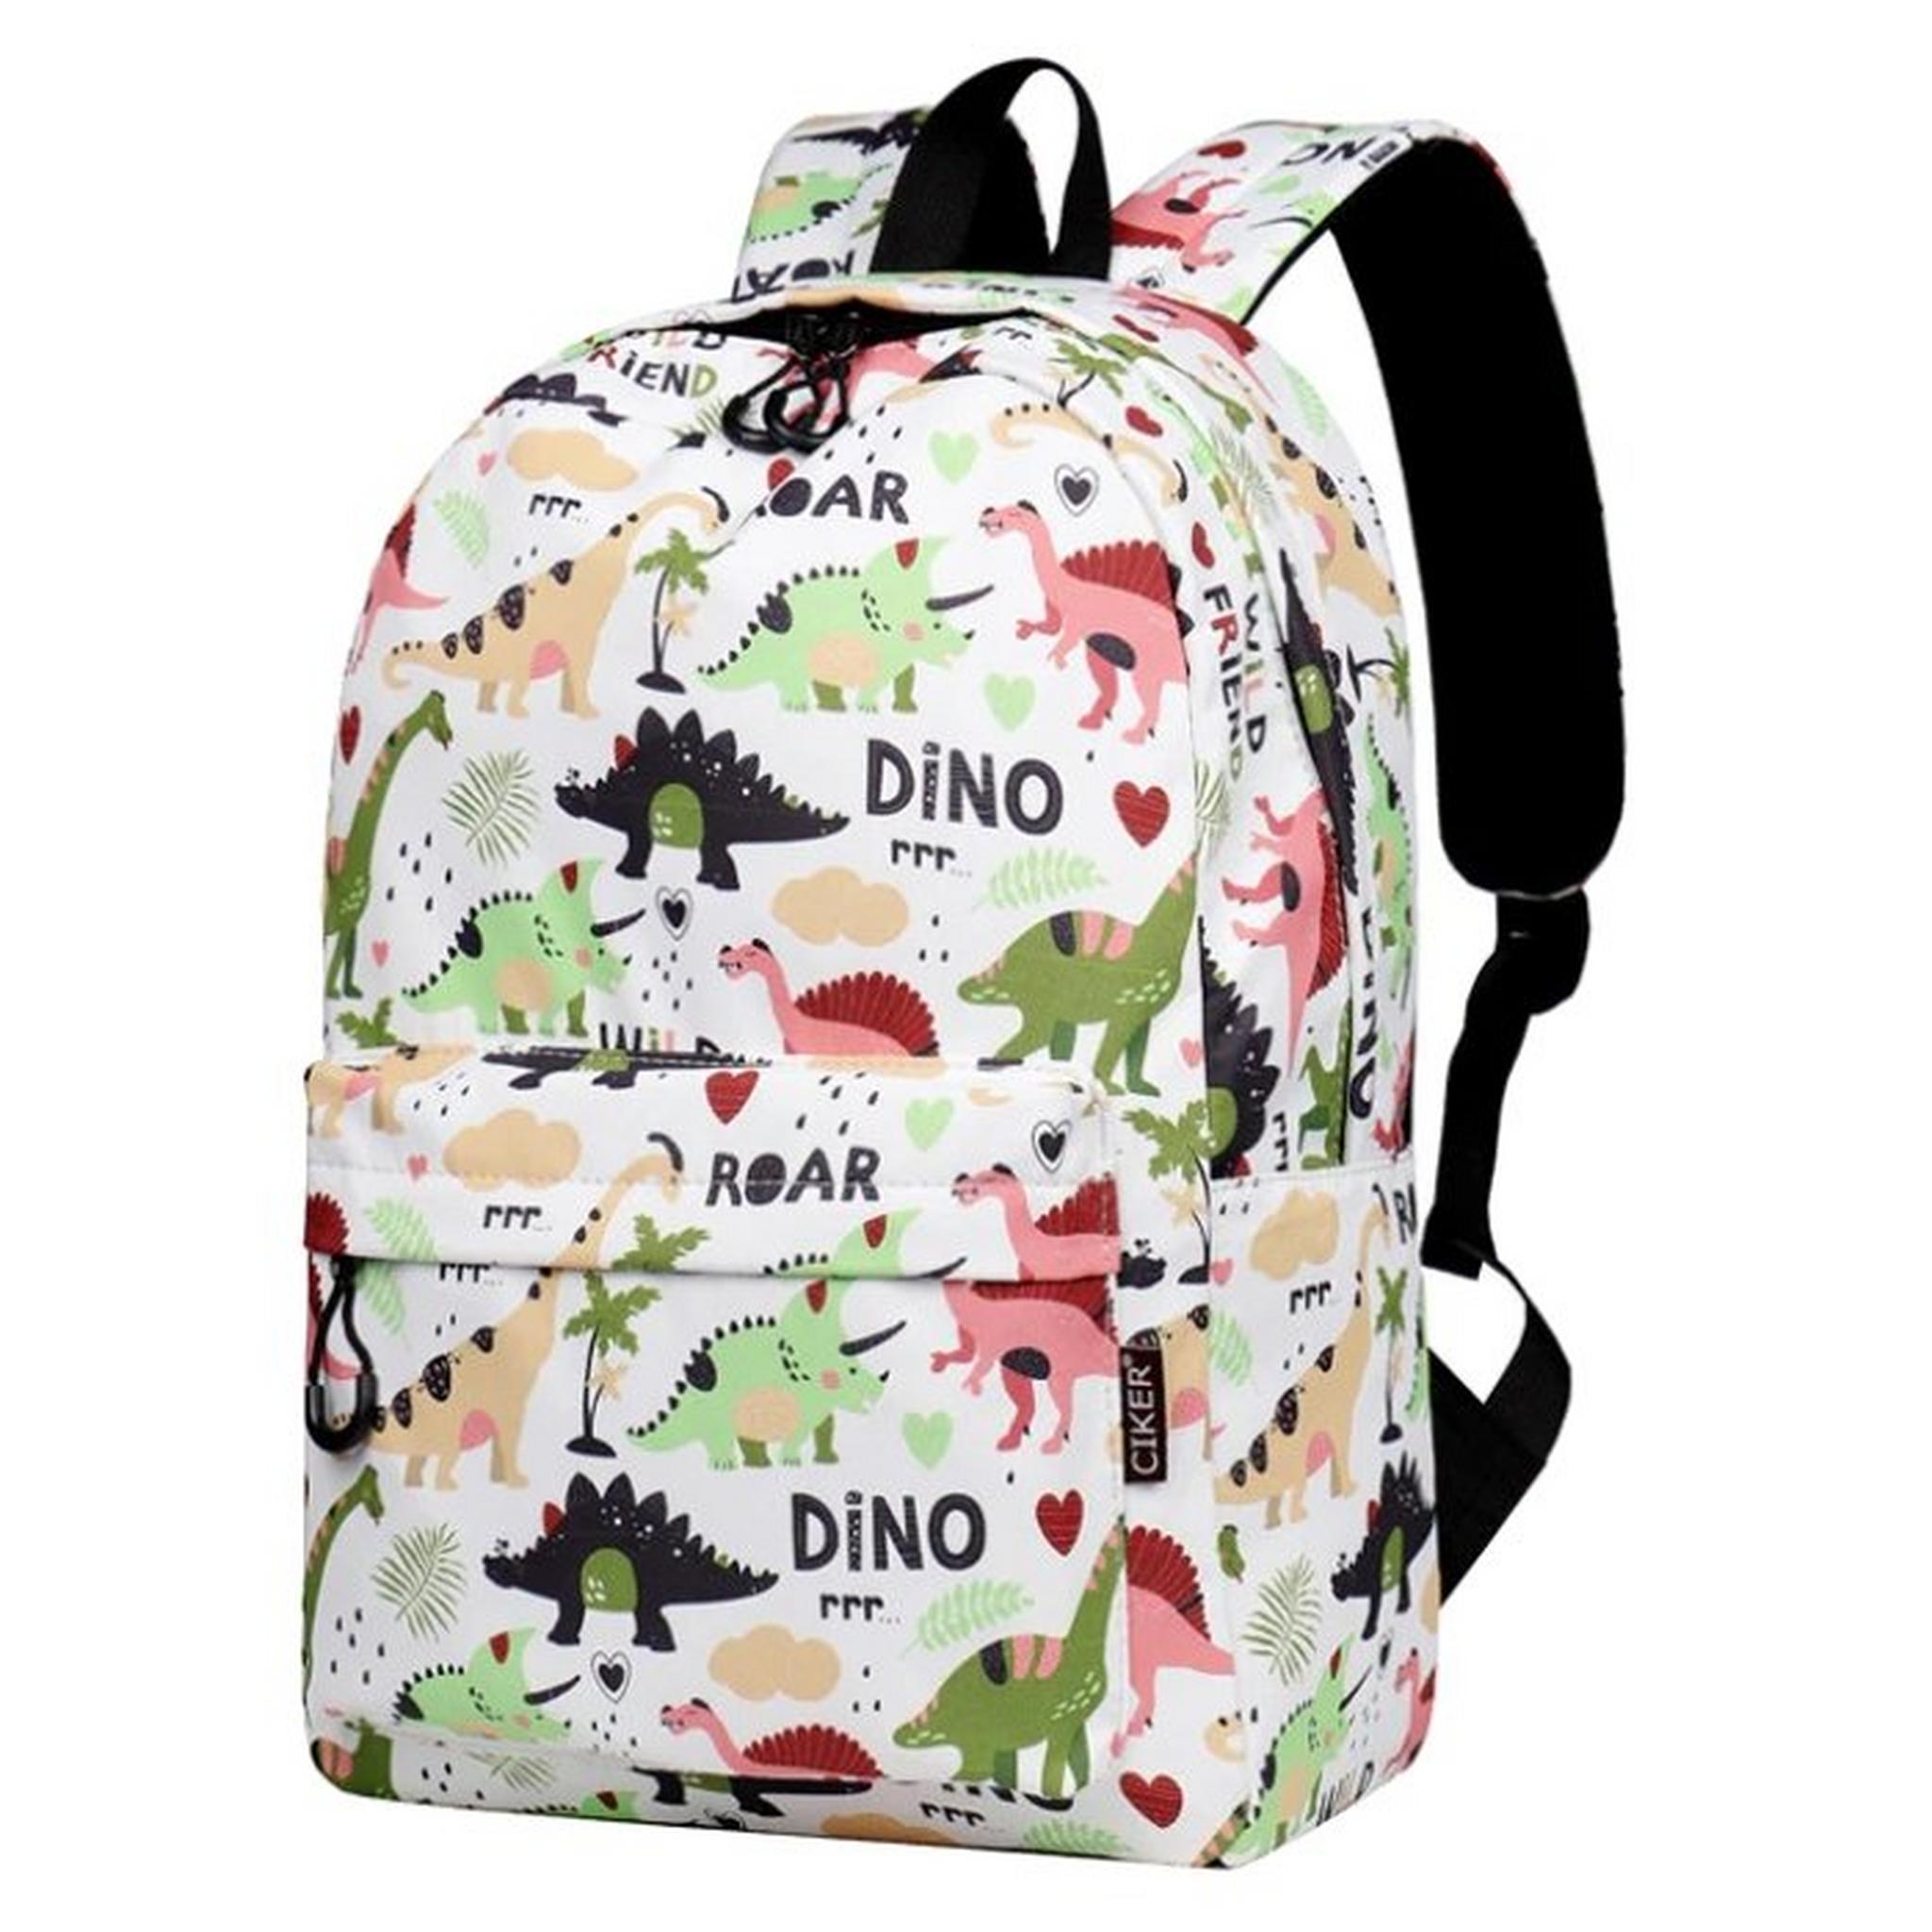 Riwbox Dino Leisure Backpack - White